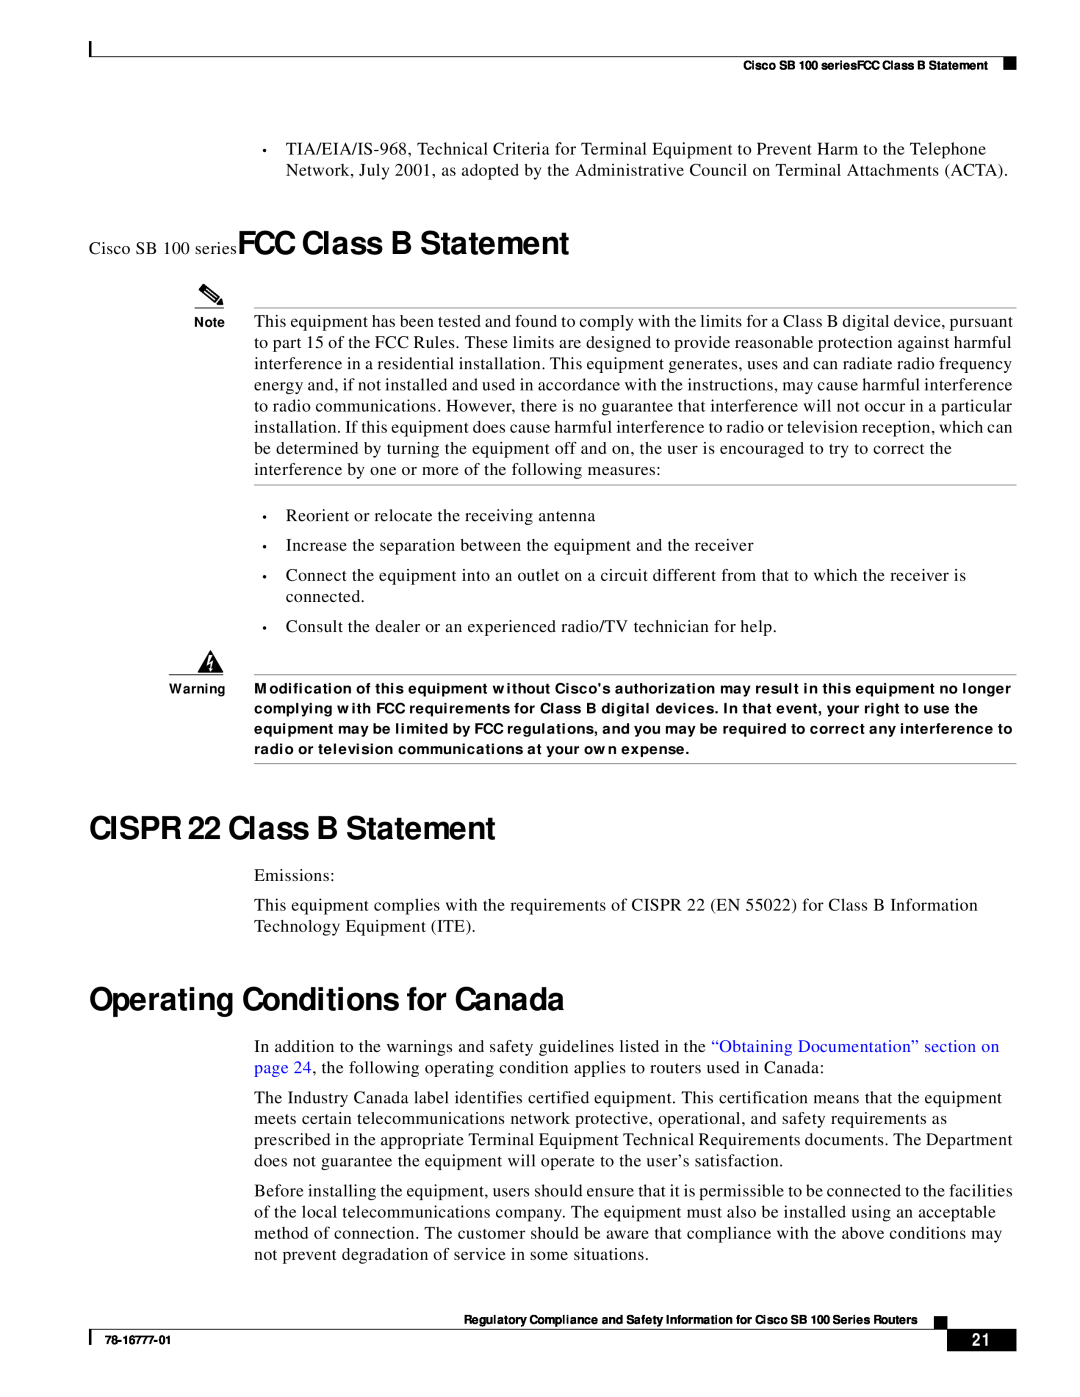 Cisco Systems SB 100 Series manual Cisco SB 100 seriesFCC Class B Statement, CISPR 22 Class B Statement 